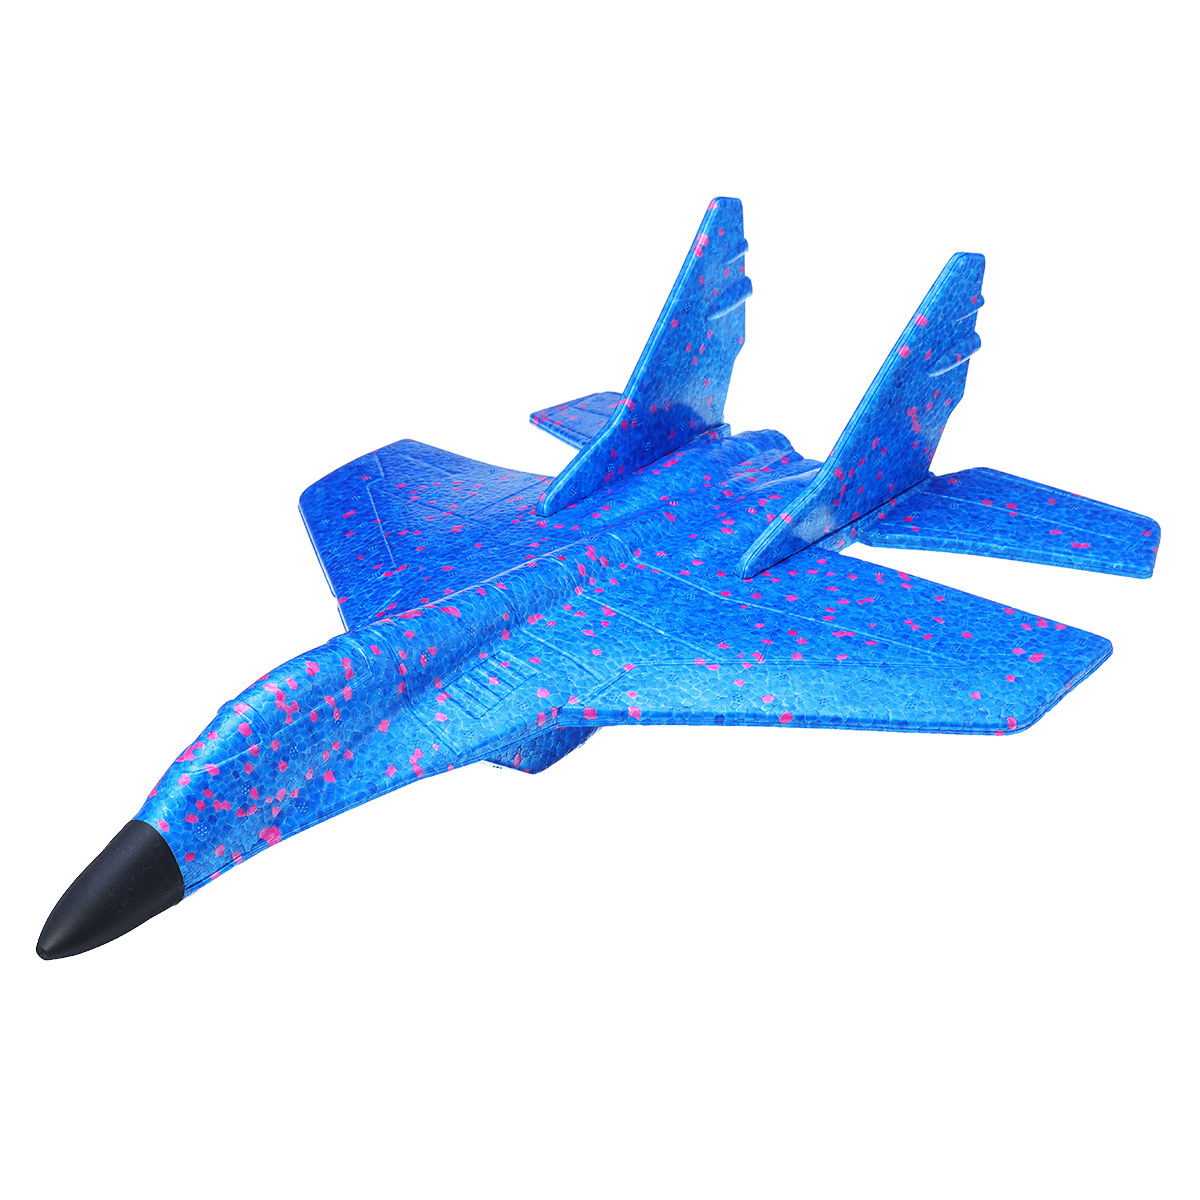 

43CM EPP Foam Hand Throw Airplane Fighter Launch Glider Plane Kids Fun Toy Gift